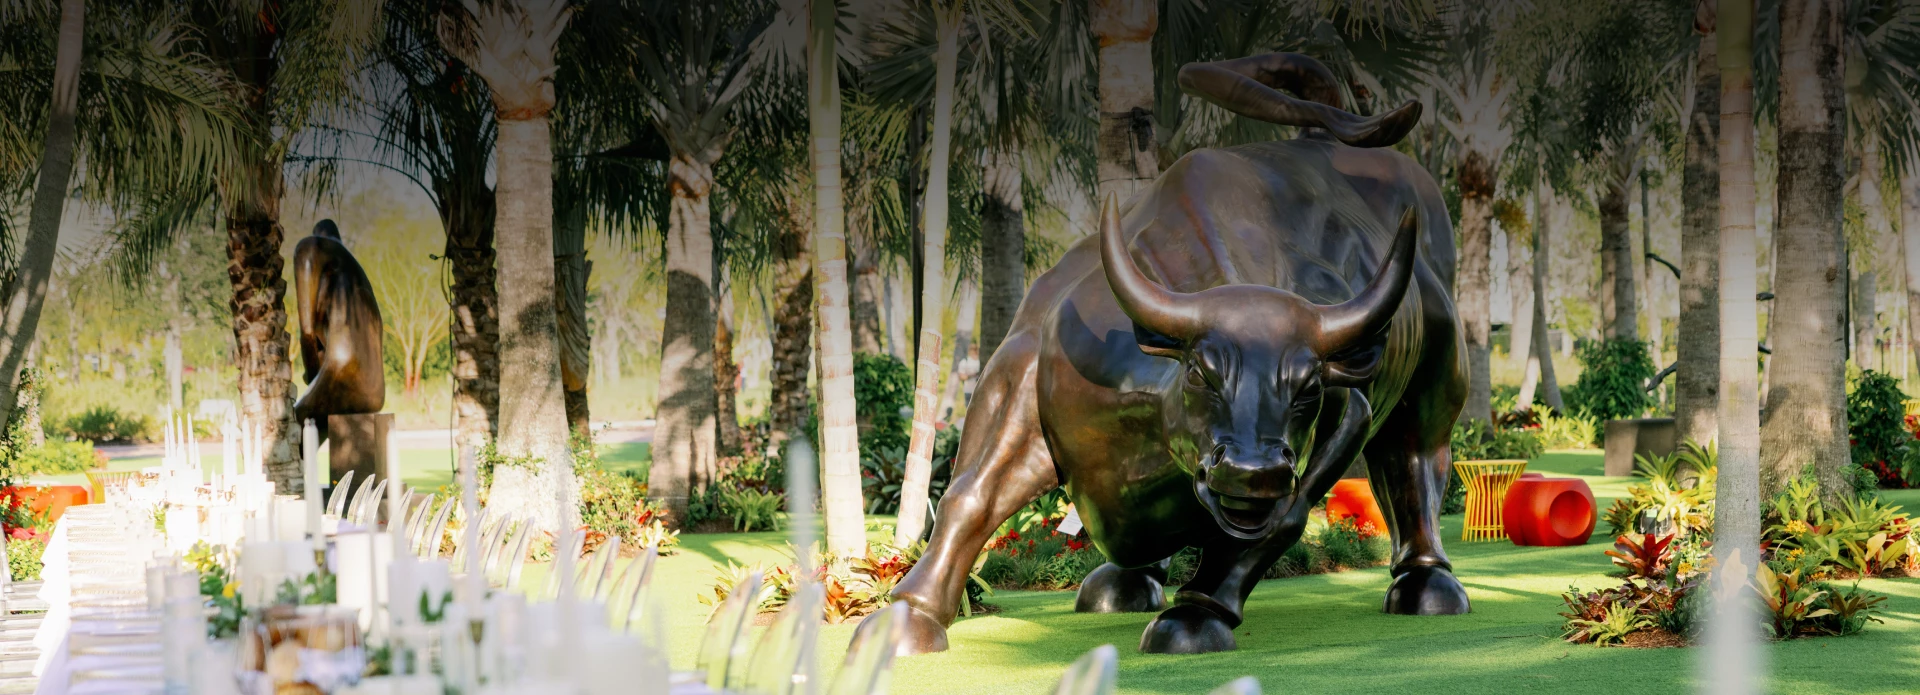 Bull Sculpture in Garden